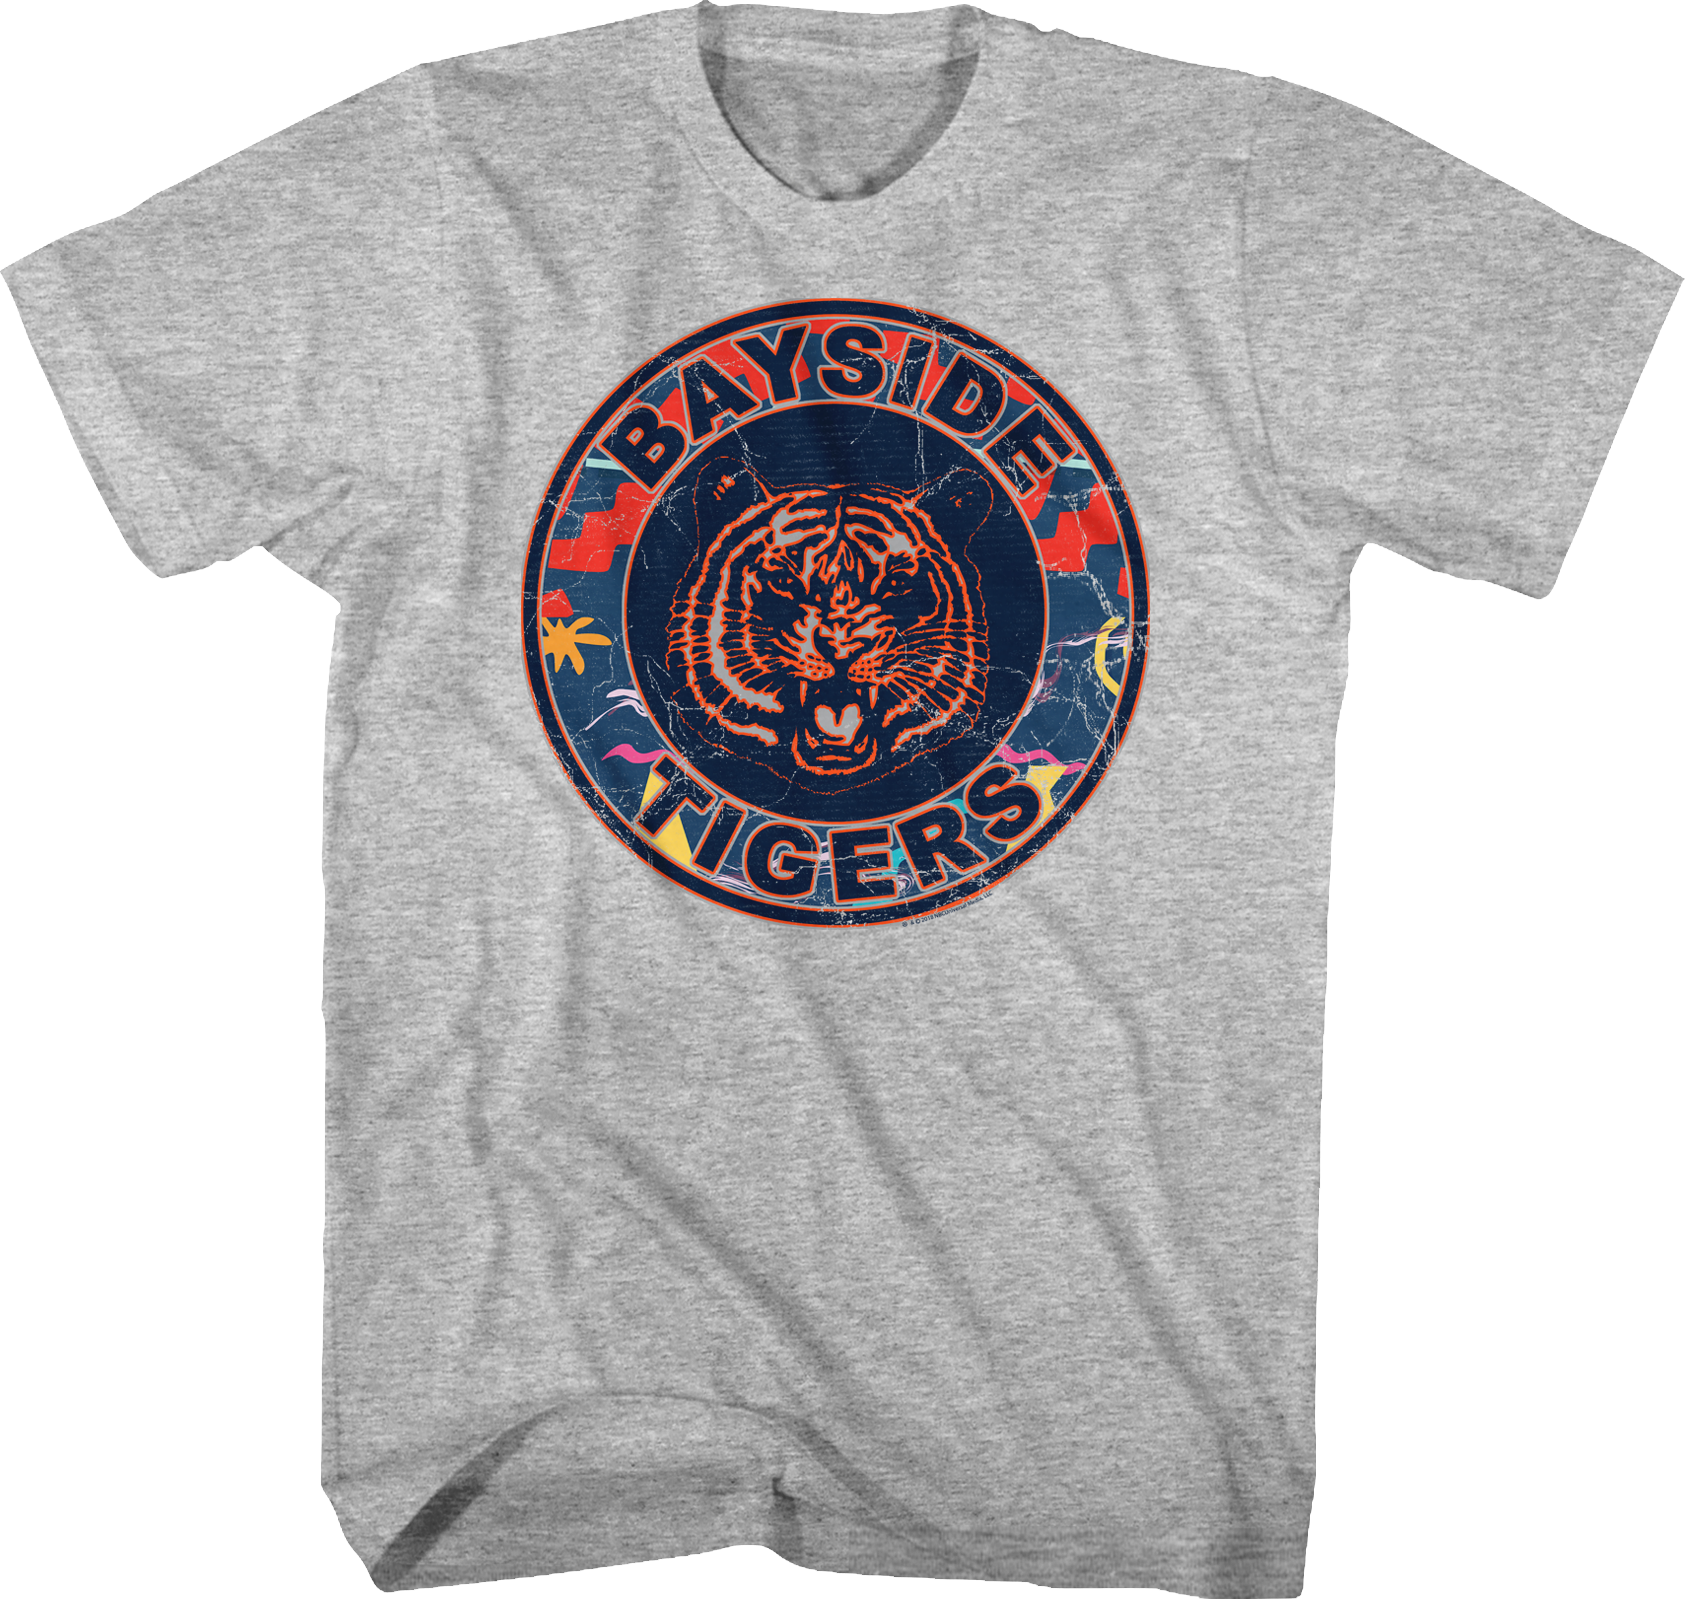 Bayside Tigers Vintage T Shirt Design PNG